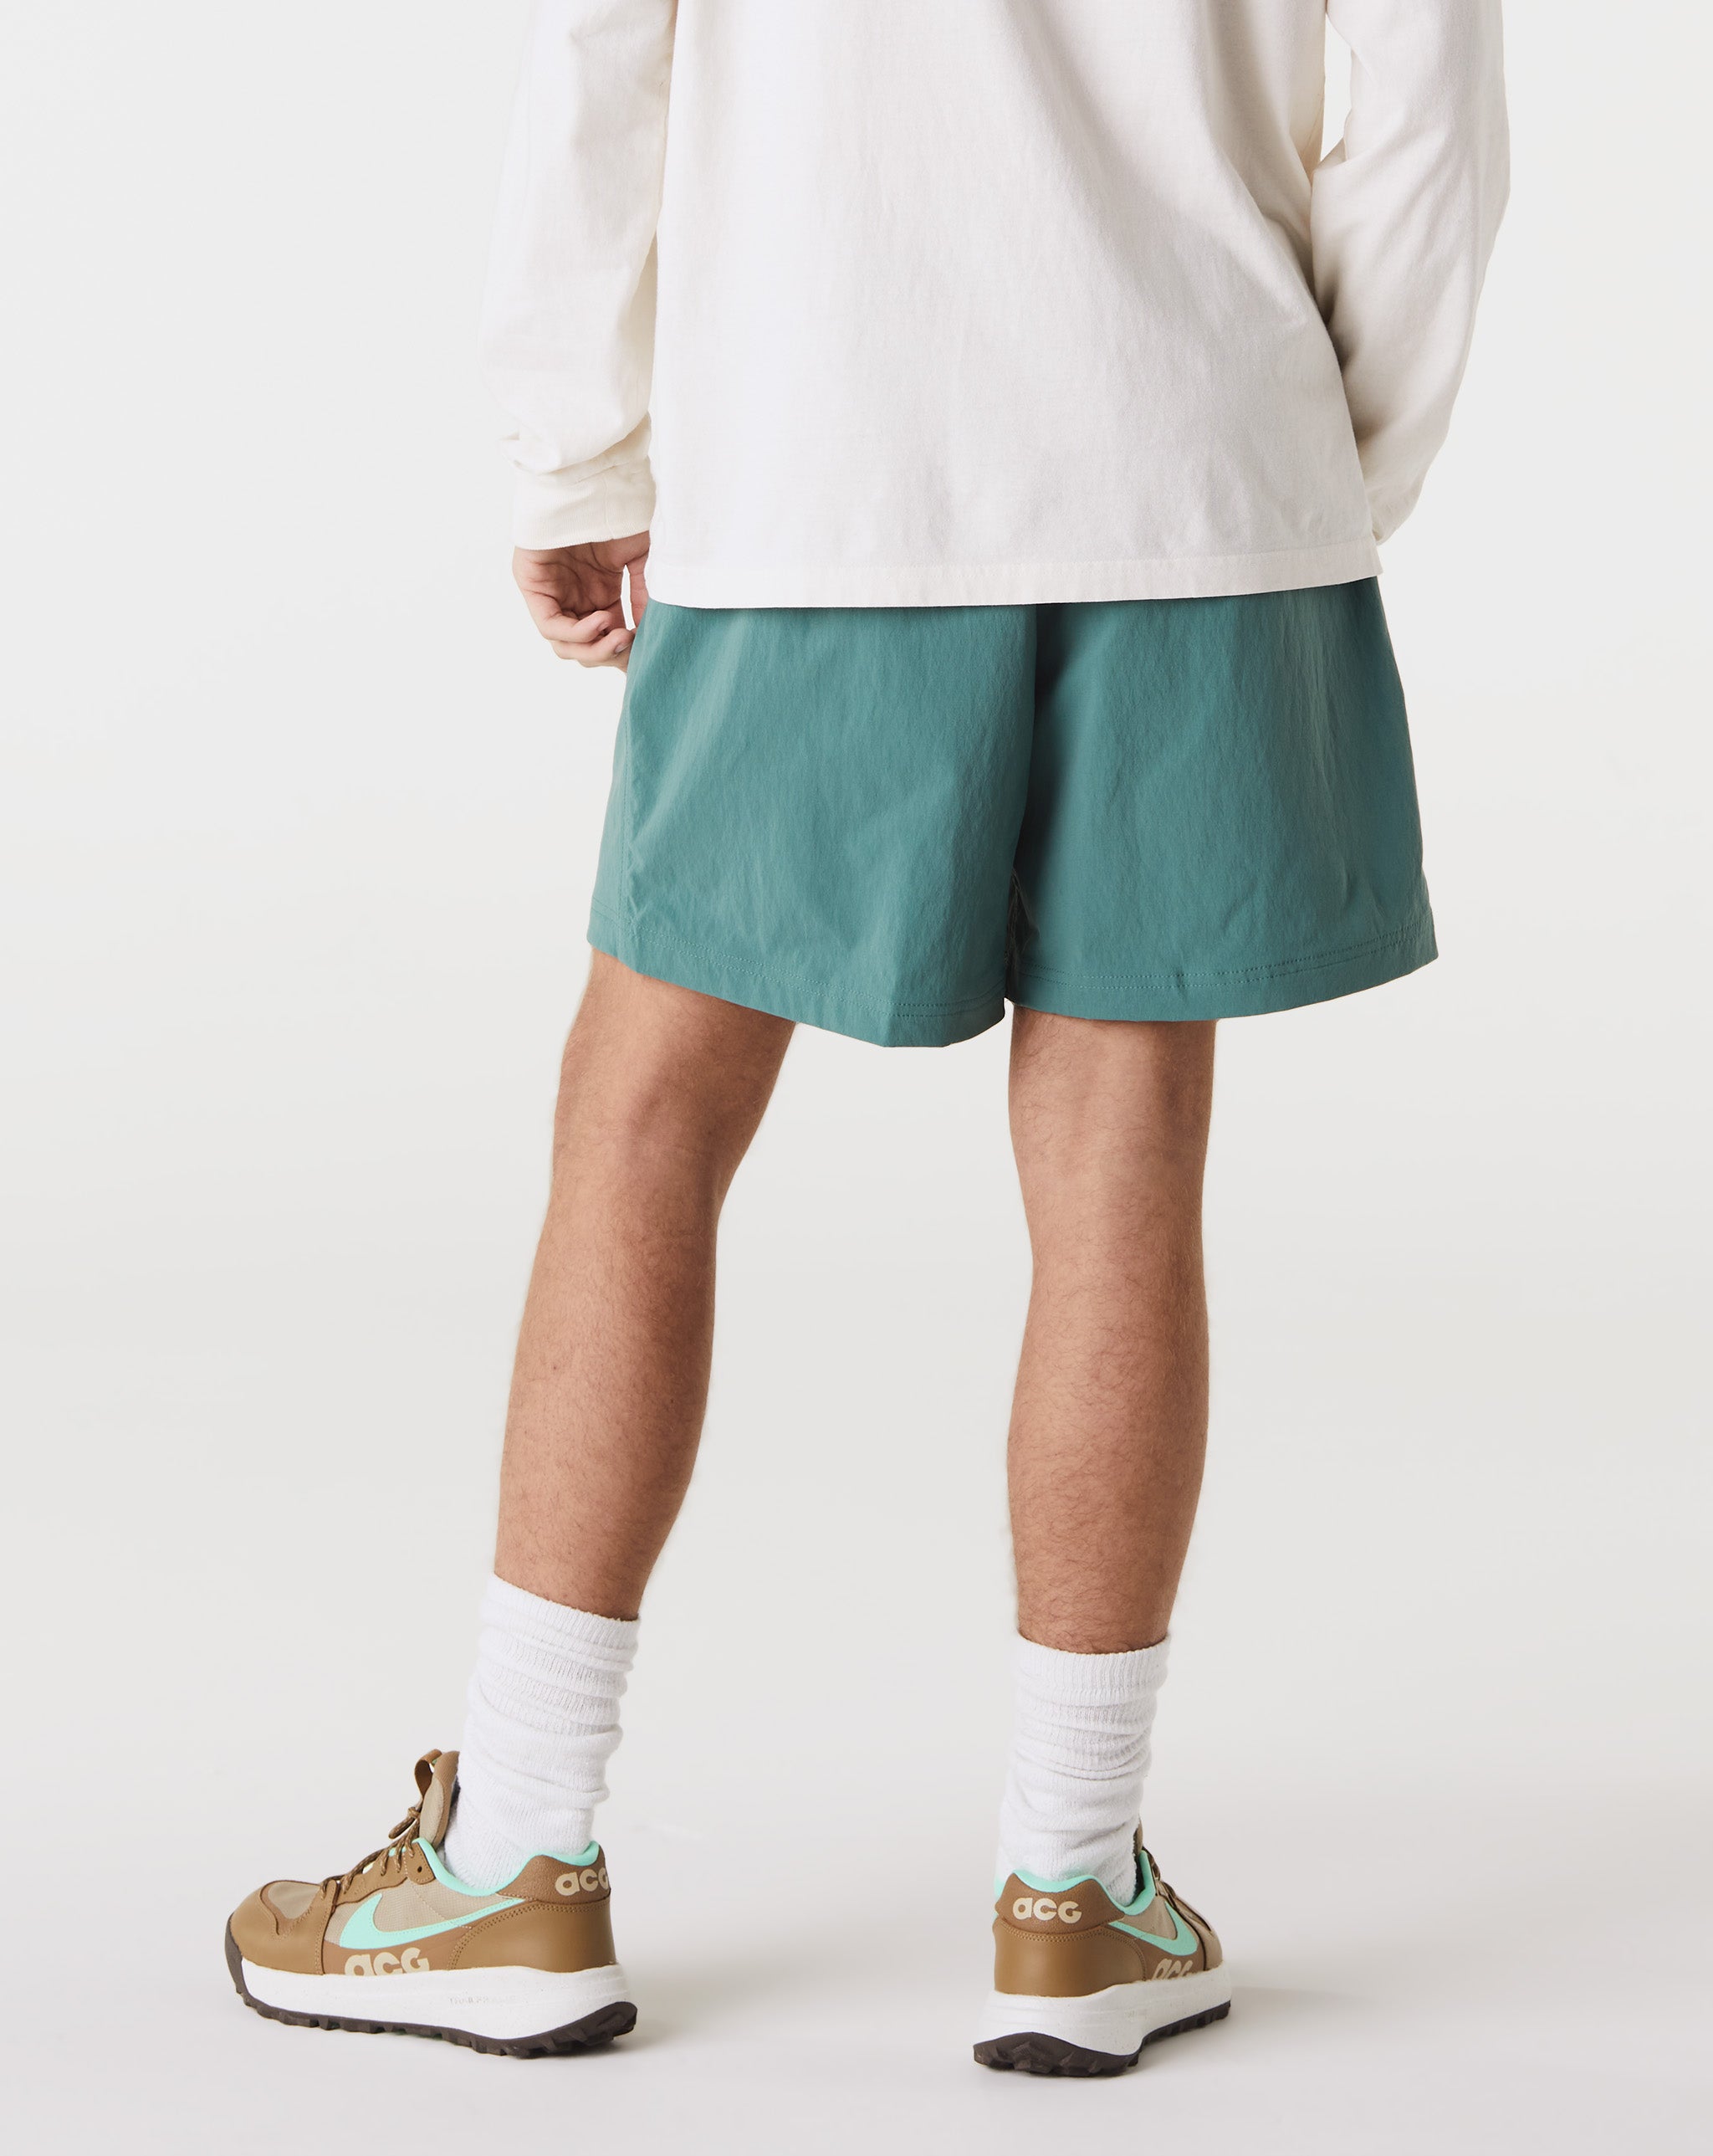 Nike Shirt dress with long sleeves  - Cheap Urlfreeze Jordan outlet